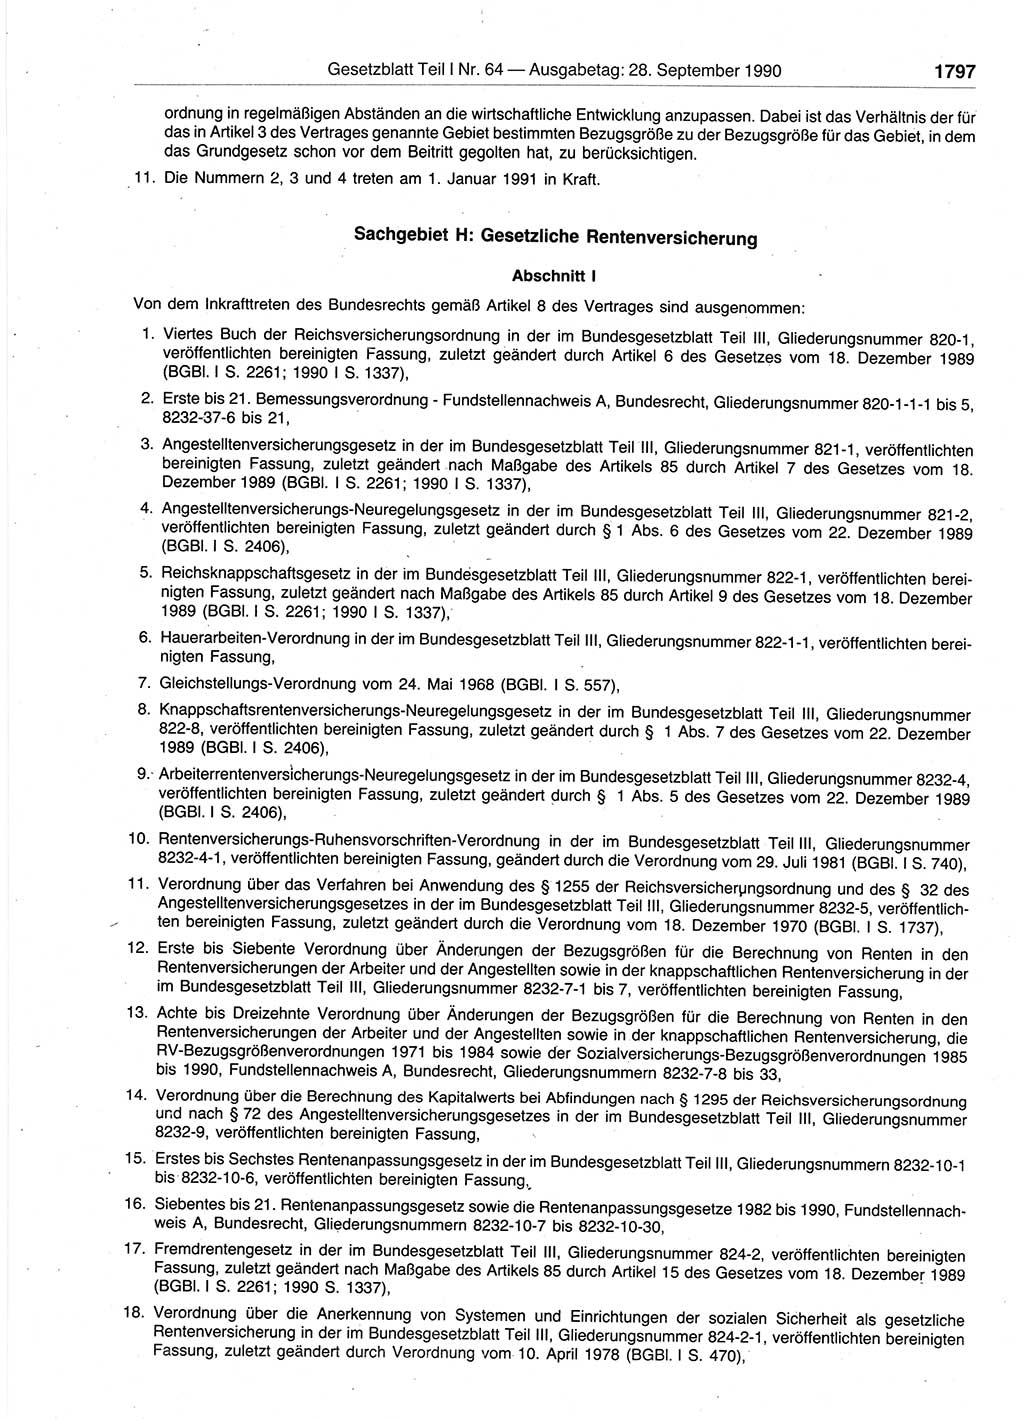 Gesetzblatt (GBl.) der Deutschen Demokratischen Republik (DDR) Teil Ⅰ 1990, Seite 1797 (GBl. DDR Ⅰ 1990, S. 1797)